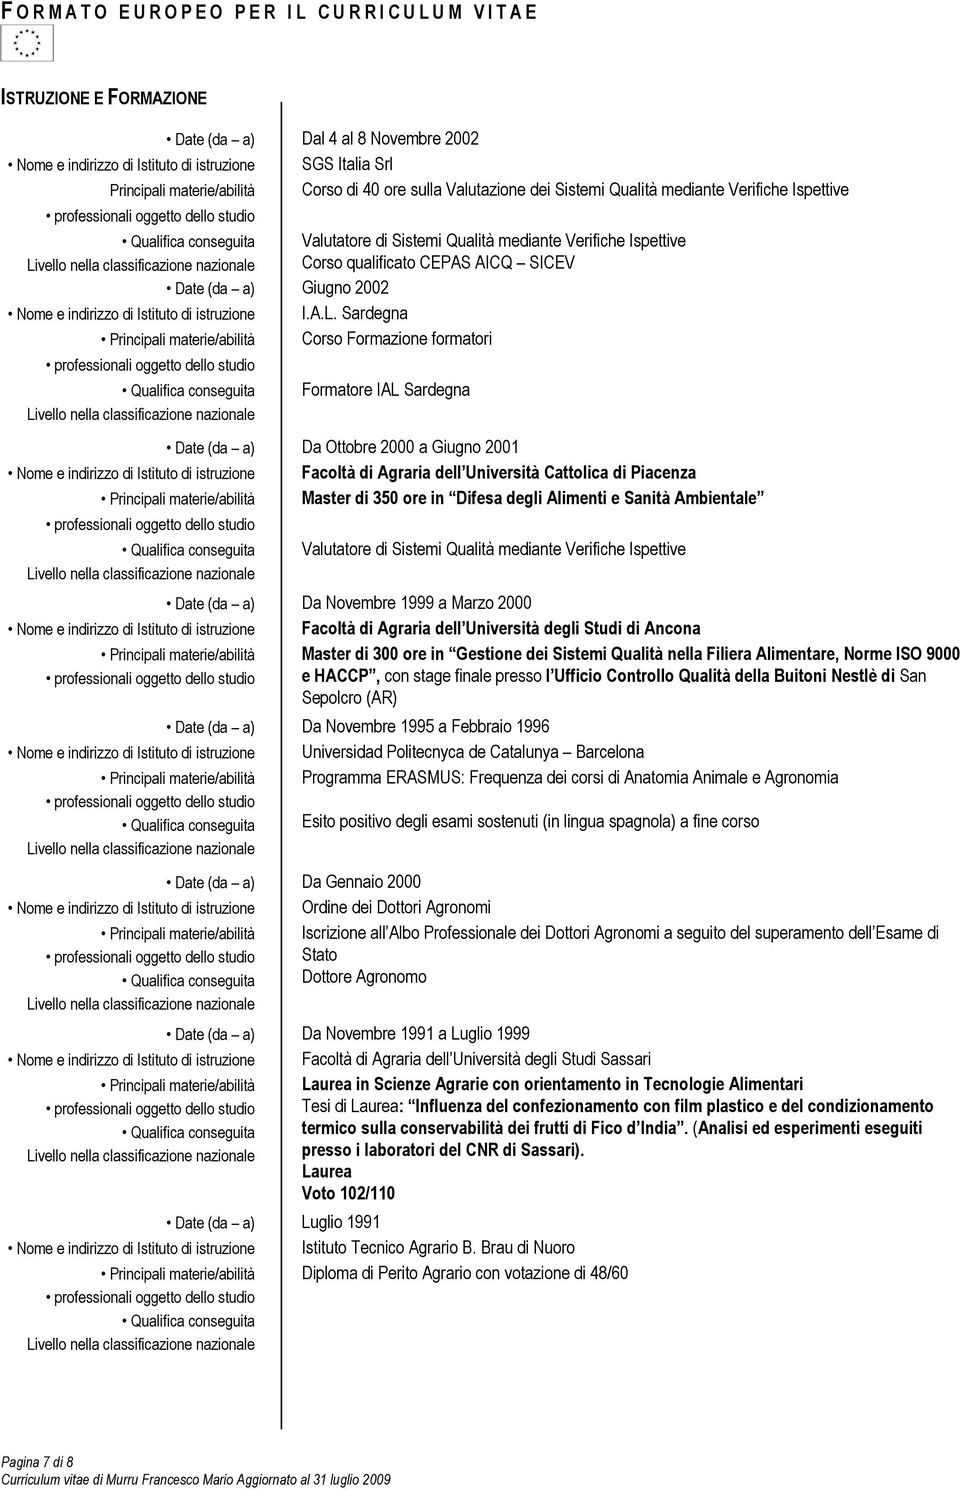 Sardegna Principali materie/abilità Corso Formazione formatori Formatore IAL Sardegna Date (da a) Da Ottobre 2000 a Giugno 2001 Nome e indirizzo di Istituto di istruzione Facoltà di Agraria dell